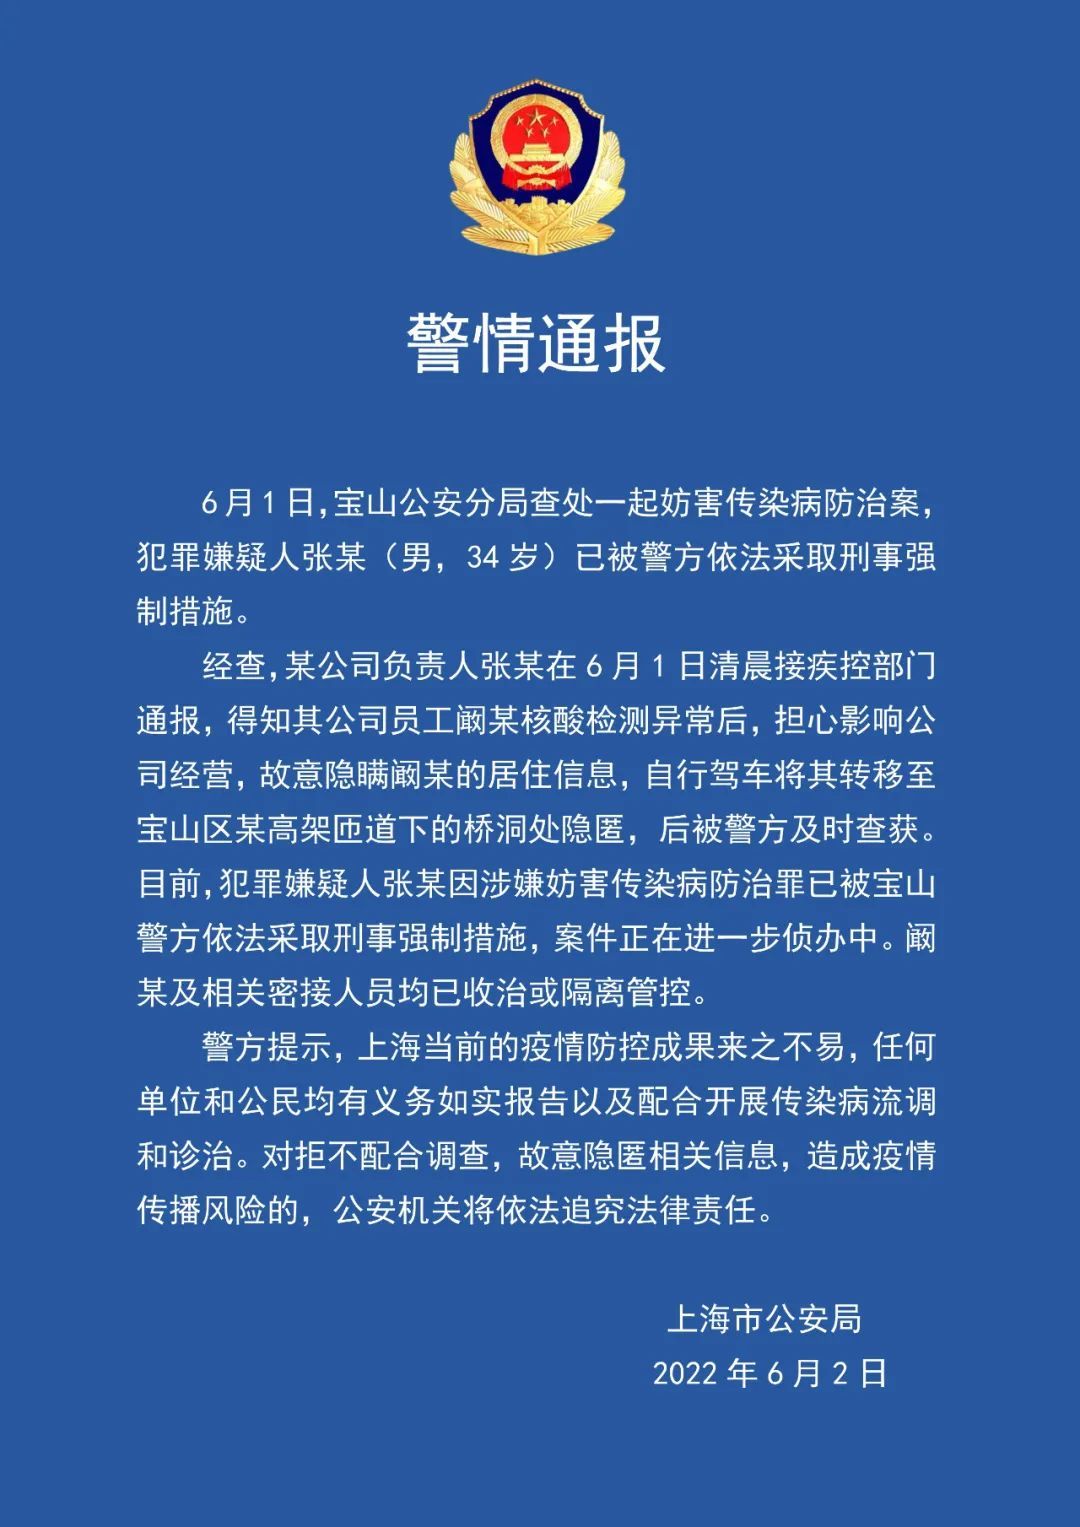 “将核酸异常员工藏至桥洞” 上海警方通报